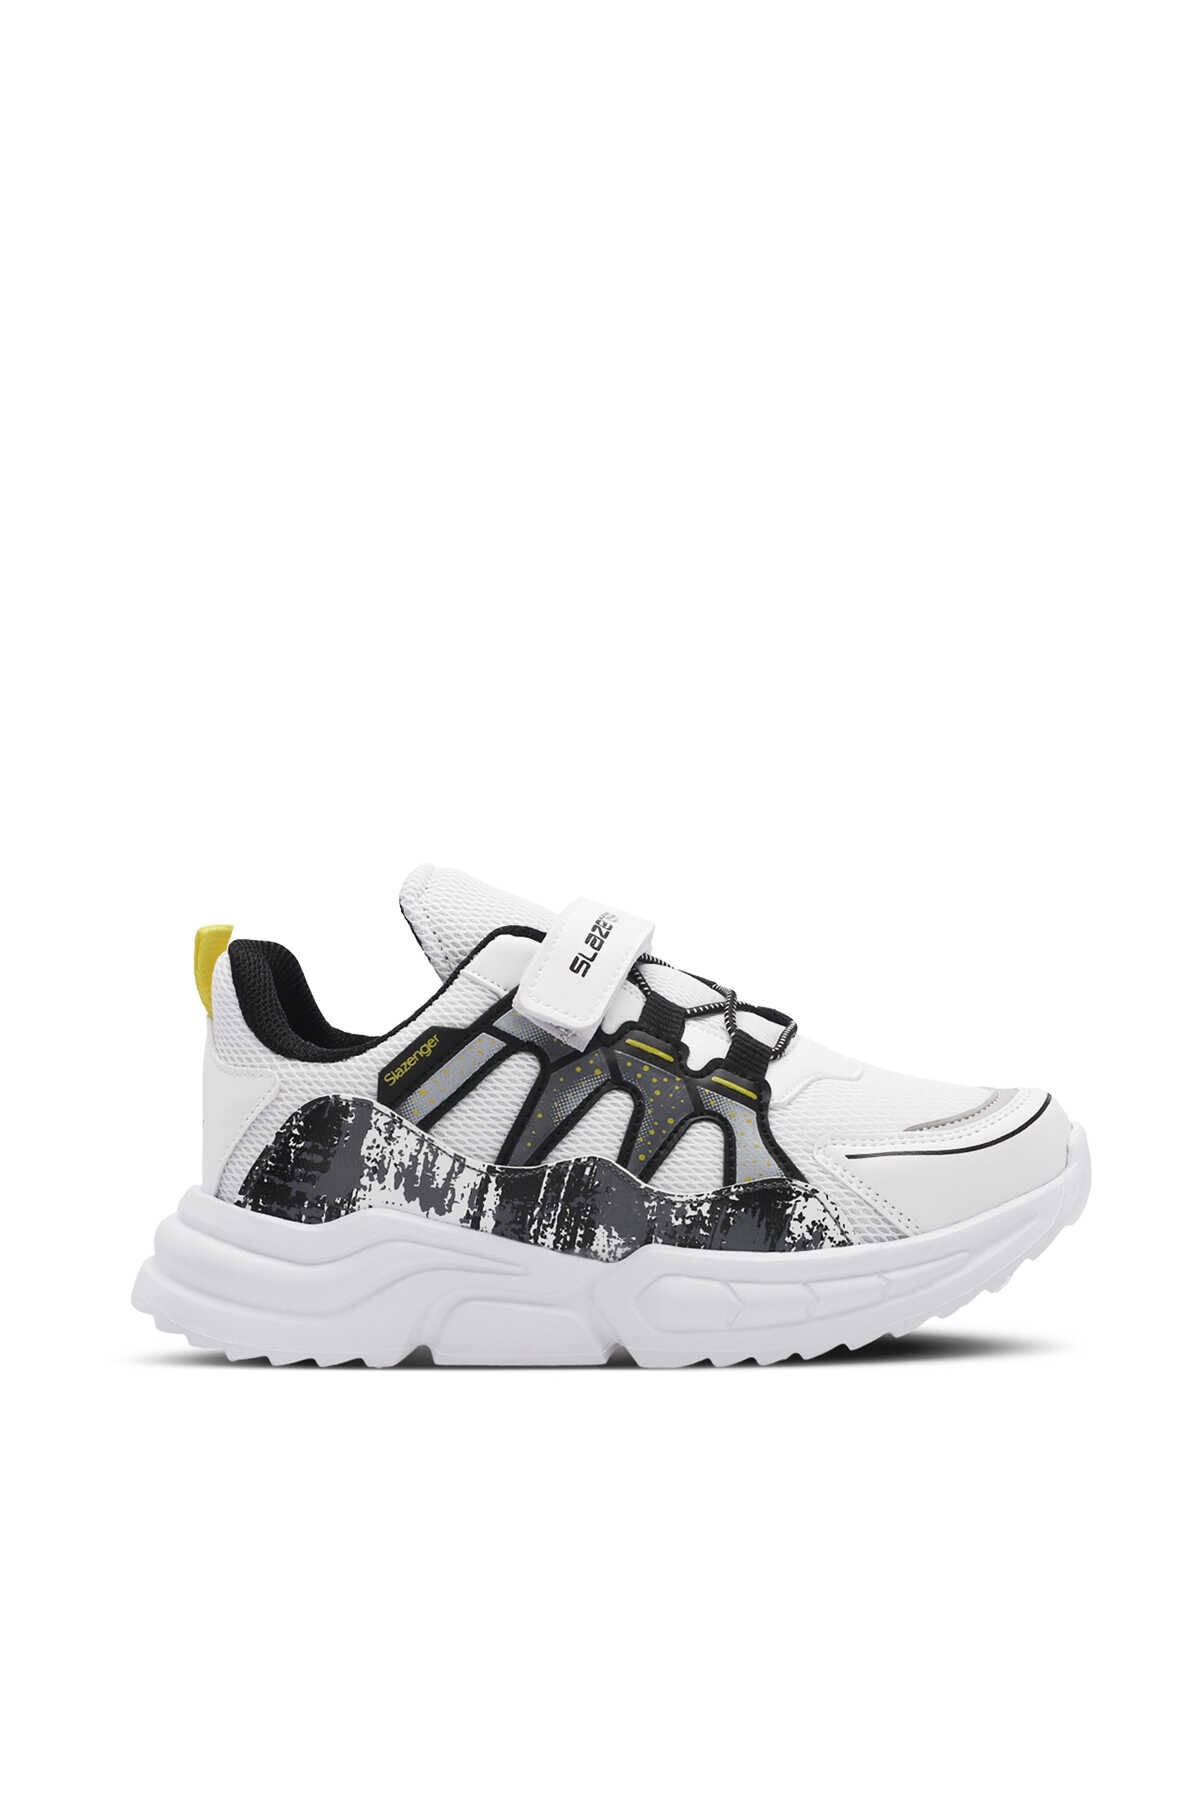 Slazenger - Slazenger KIKI Unisex Çocuk Sneaker Ayakkabı Sedef / Beyaz / Siyah